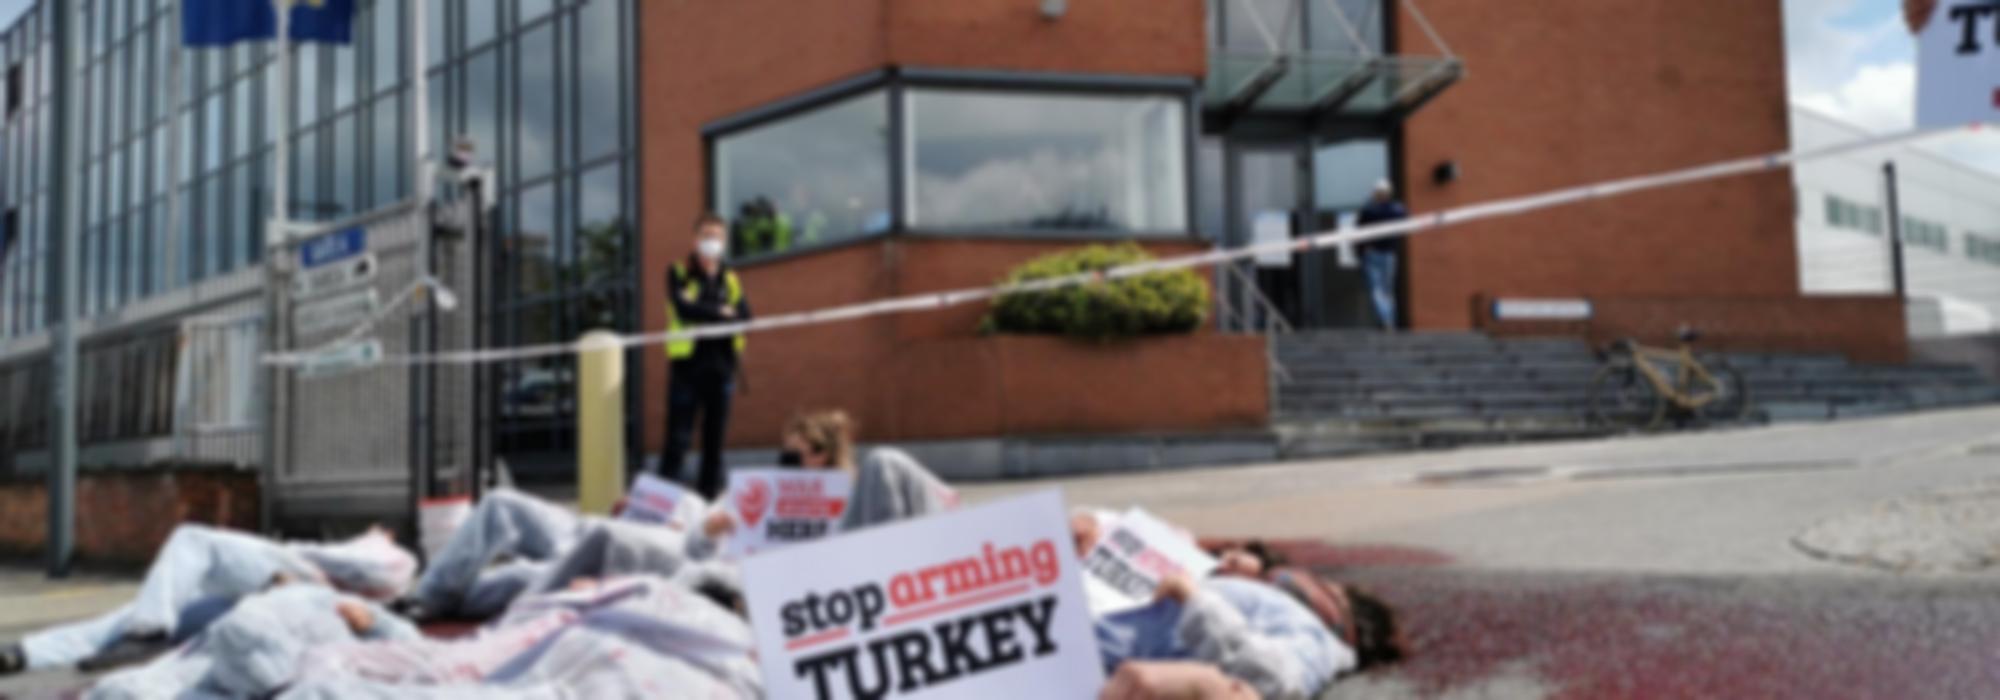 protest bij wapenfabrikant Sabca - mensen liggen op de grond in die-in. Iemand houdt bordje vast "Stop Arming Turkey"